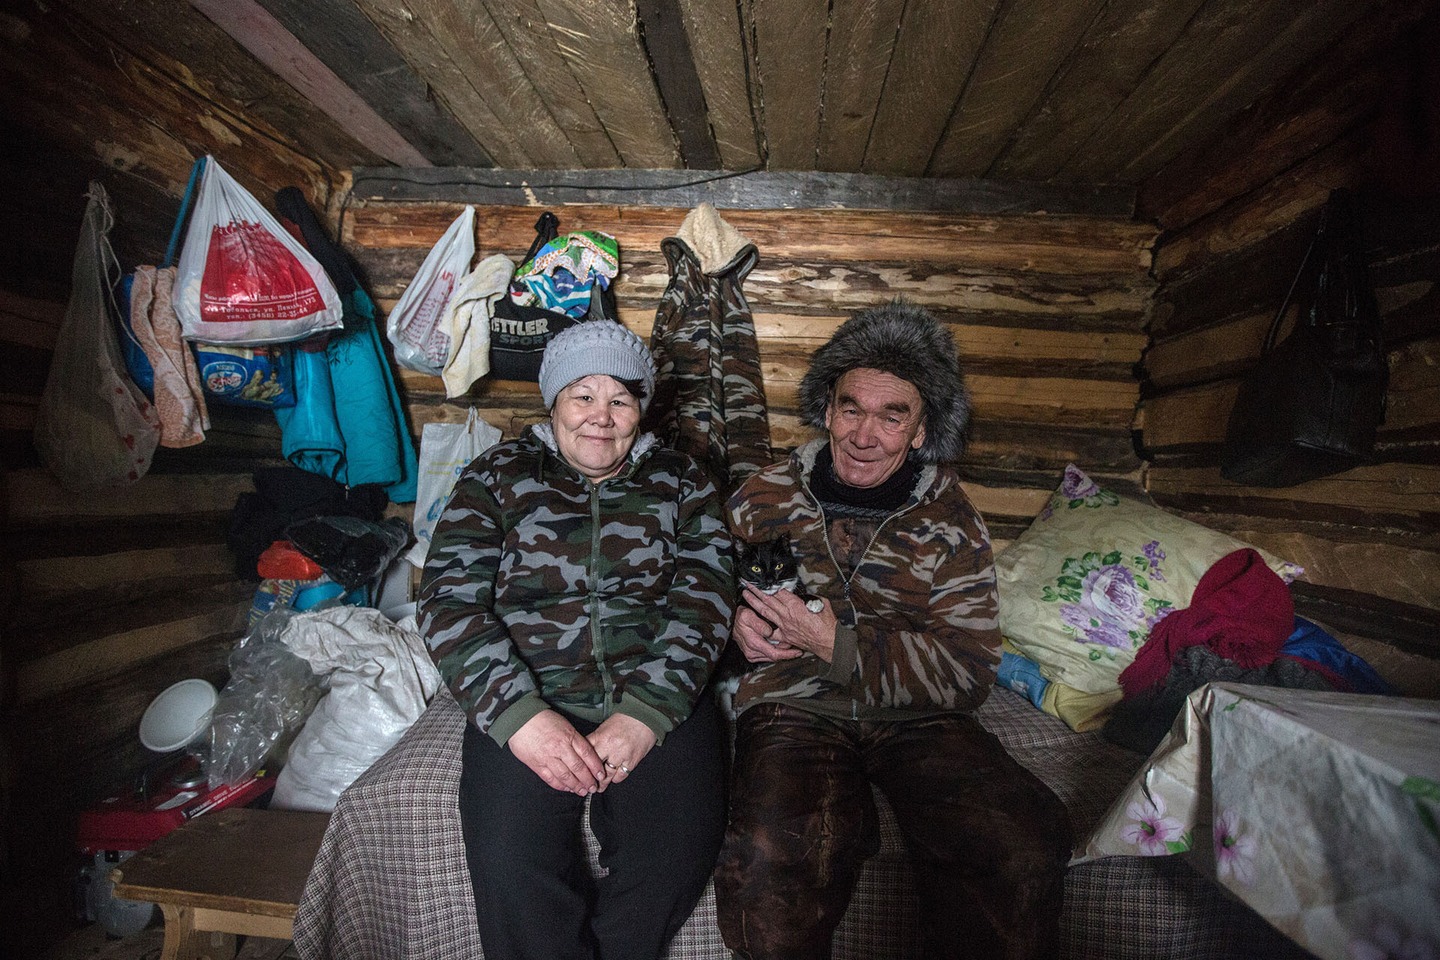 Ποια ασυνήθιστη αγορά «ανθεί» στους κατεψυγμένους βάλτους της Σιβηρίας - Φωτογραφία 9